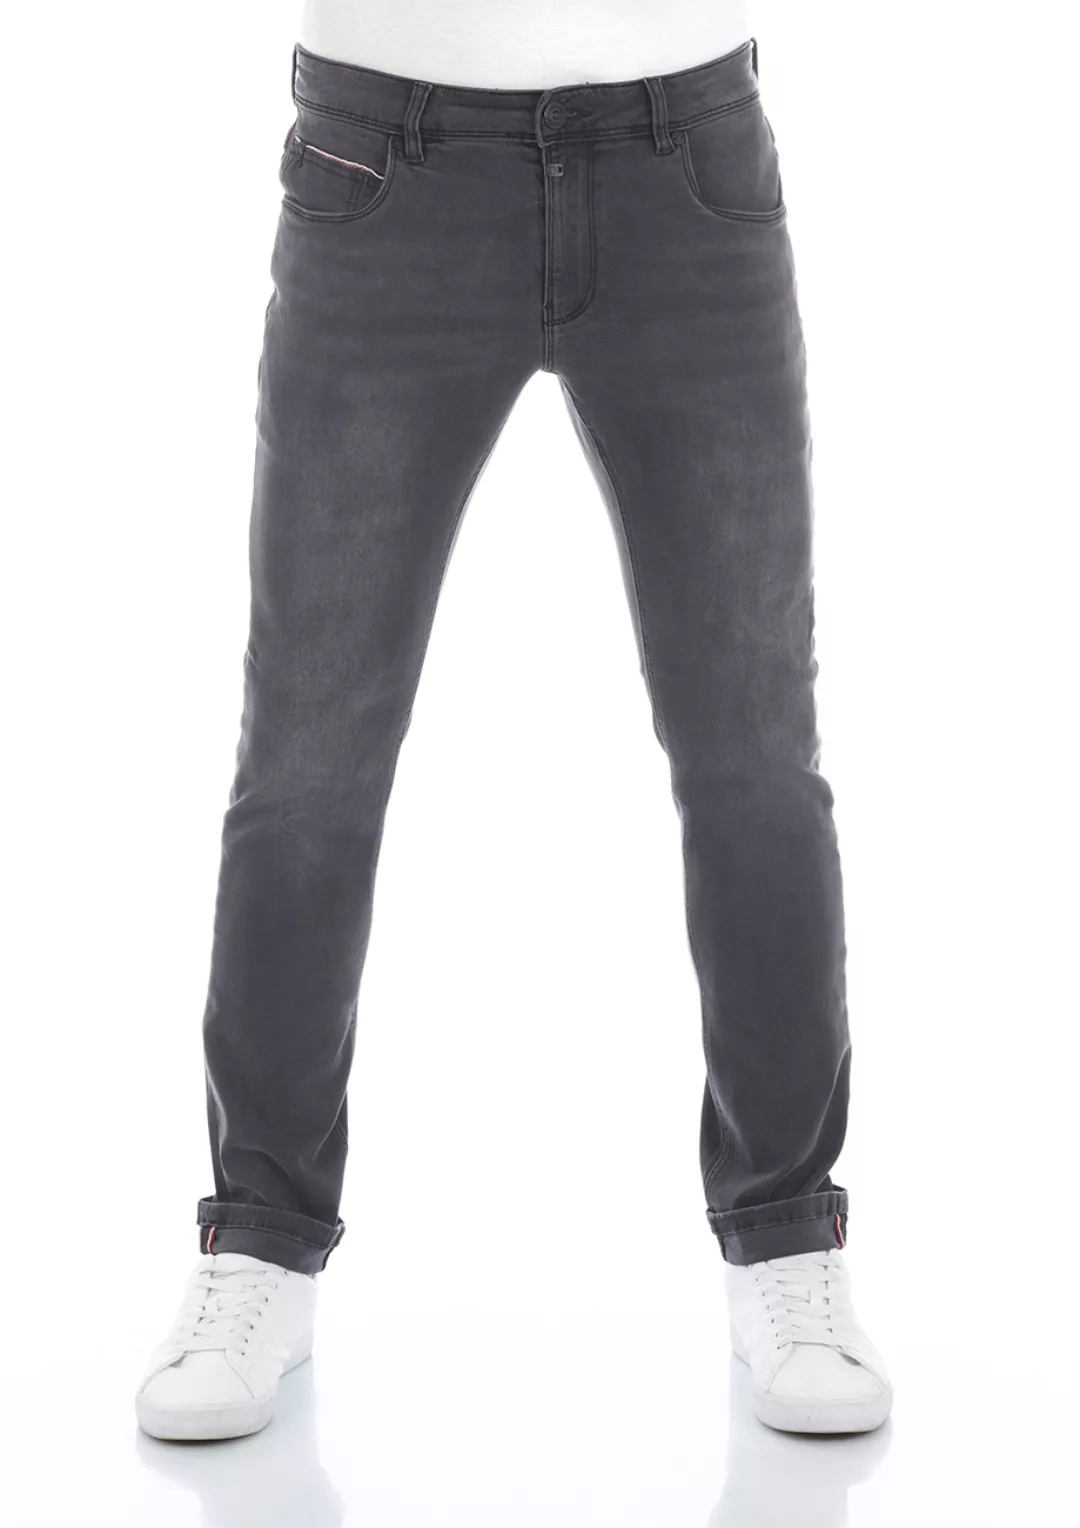 TIMEZONE Herren Jeans ScottTZ - Slim Fit - Grau - Anthra Shadow Wash günstig online kaufen